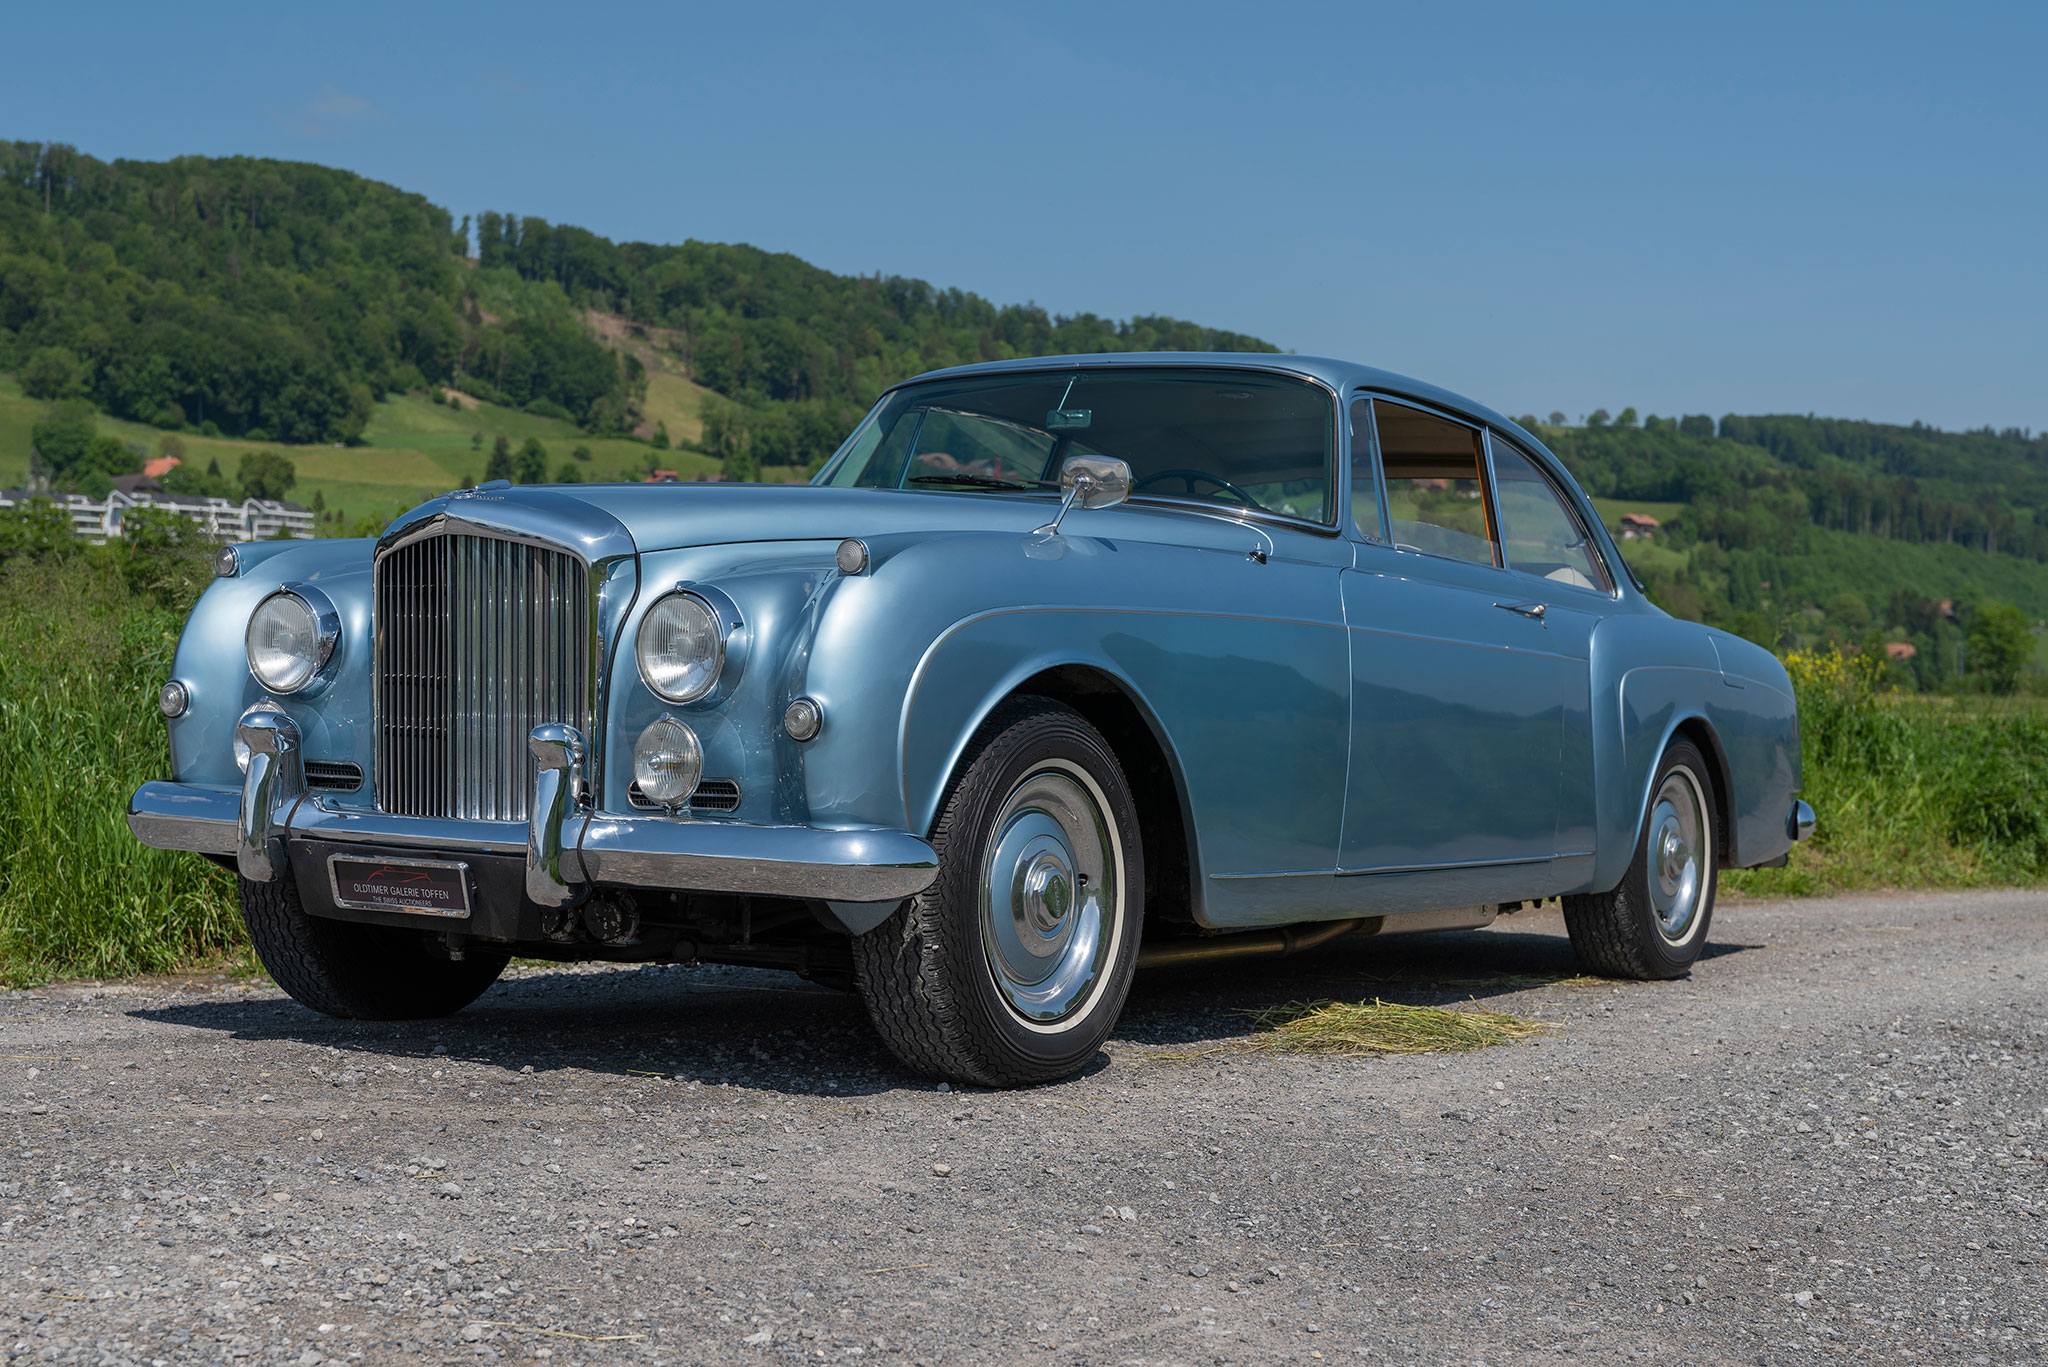 1961 Bentley S2 Continental 2-Door – dessiné par H.J. Mulliner, ce coupé mesure tout de même près de 5m40 - Voitures de caractère.